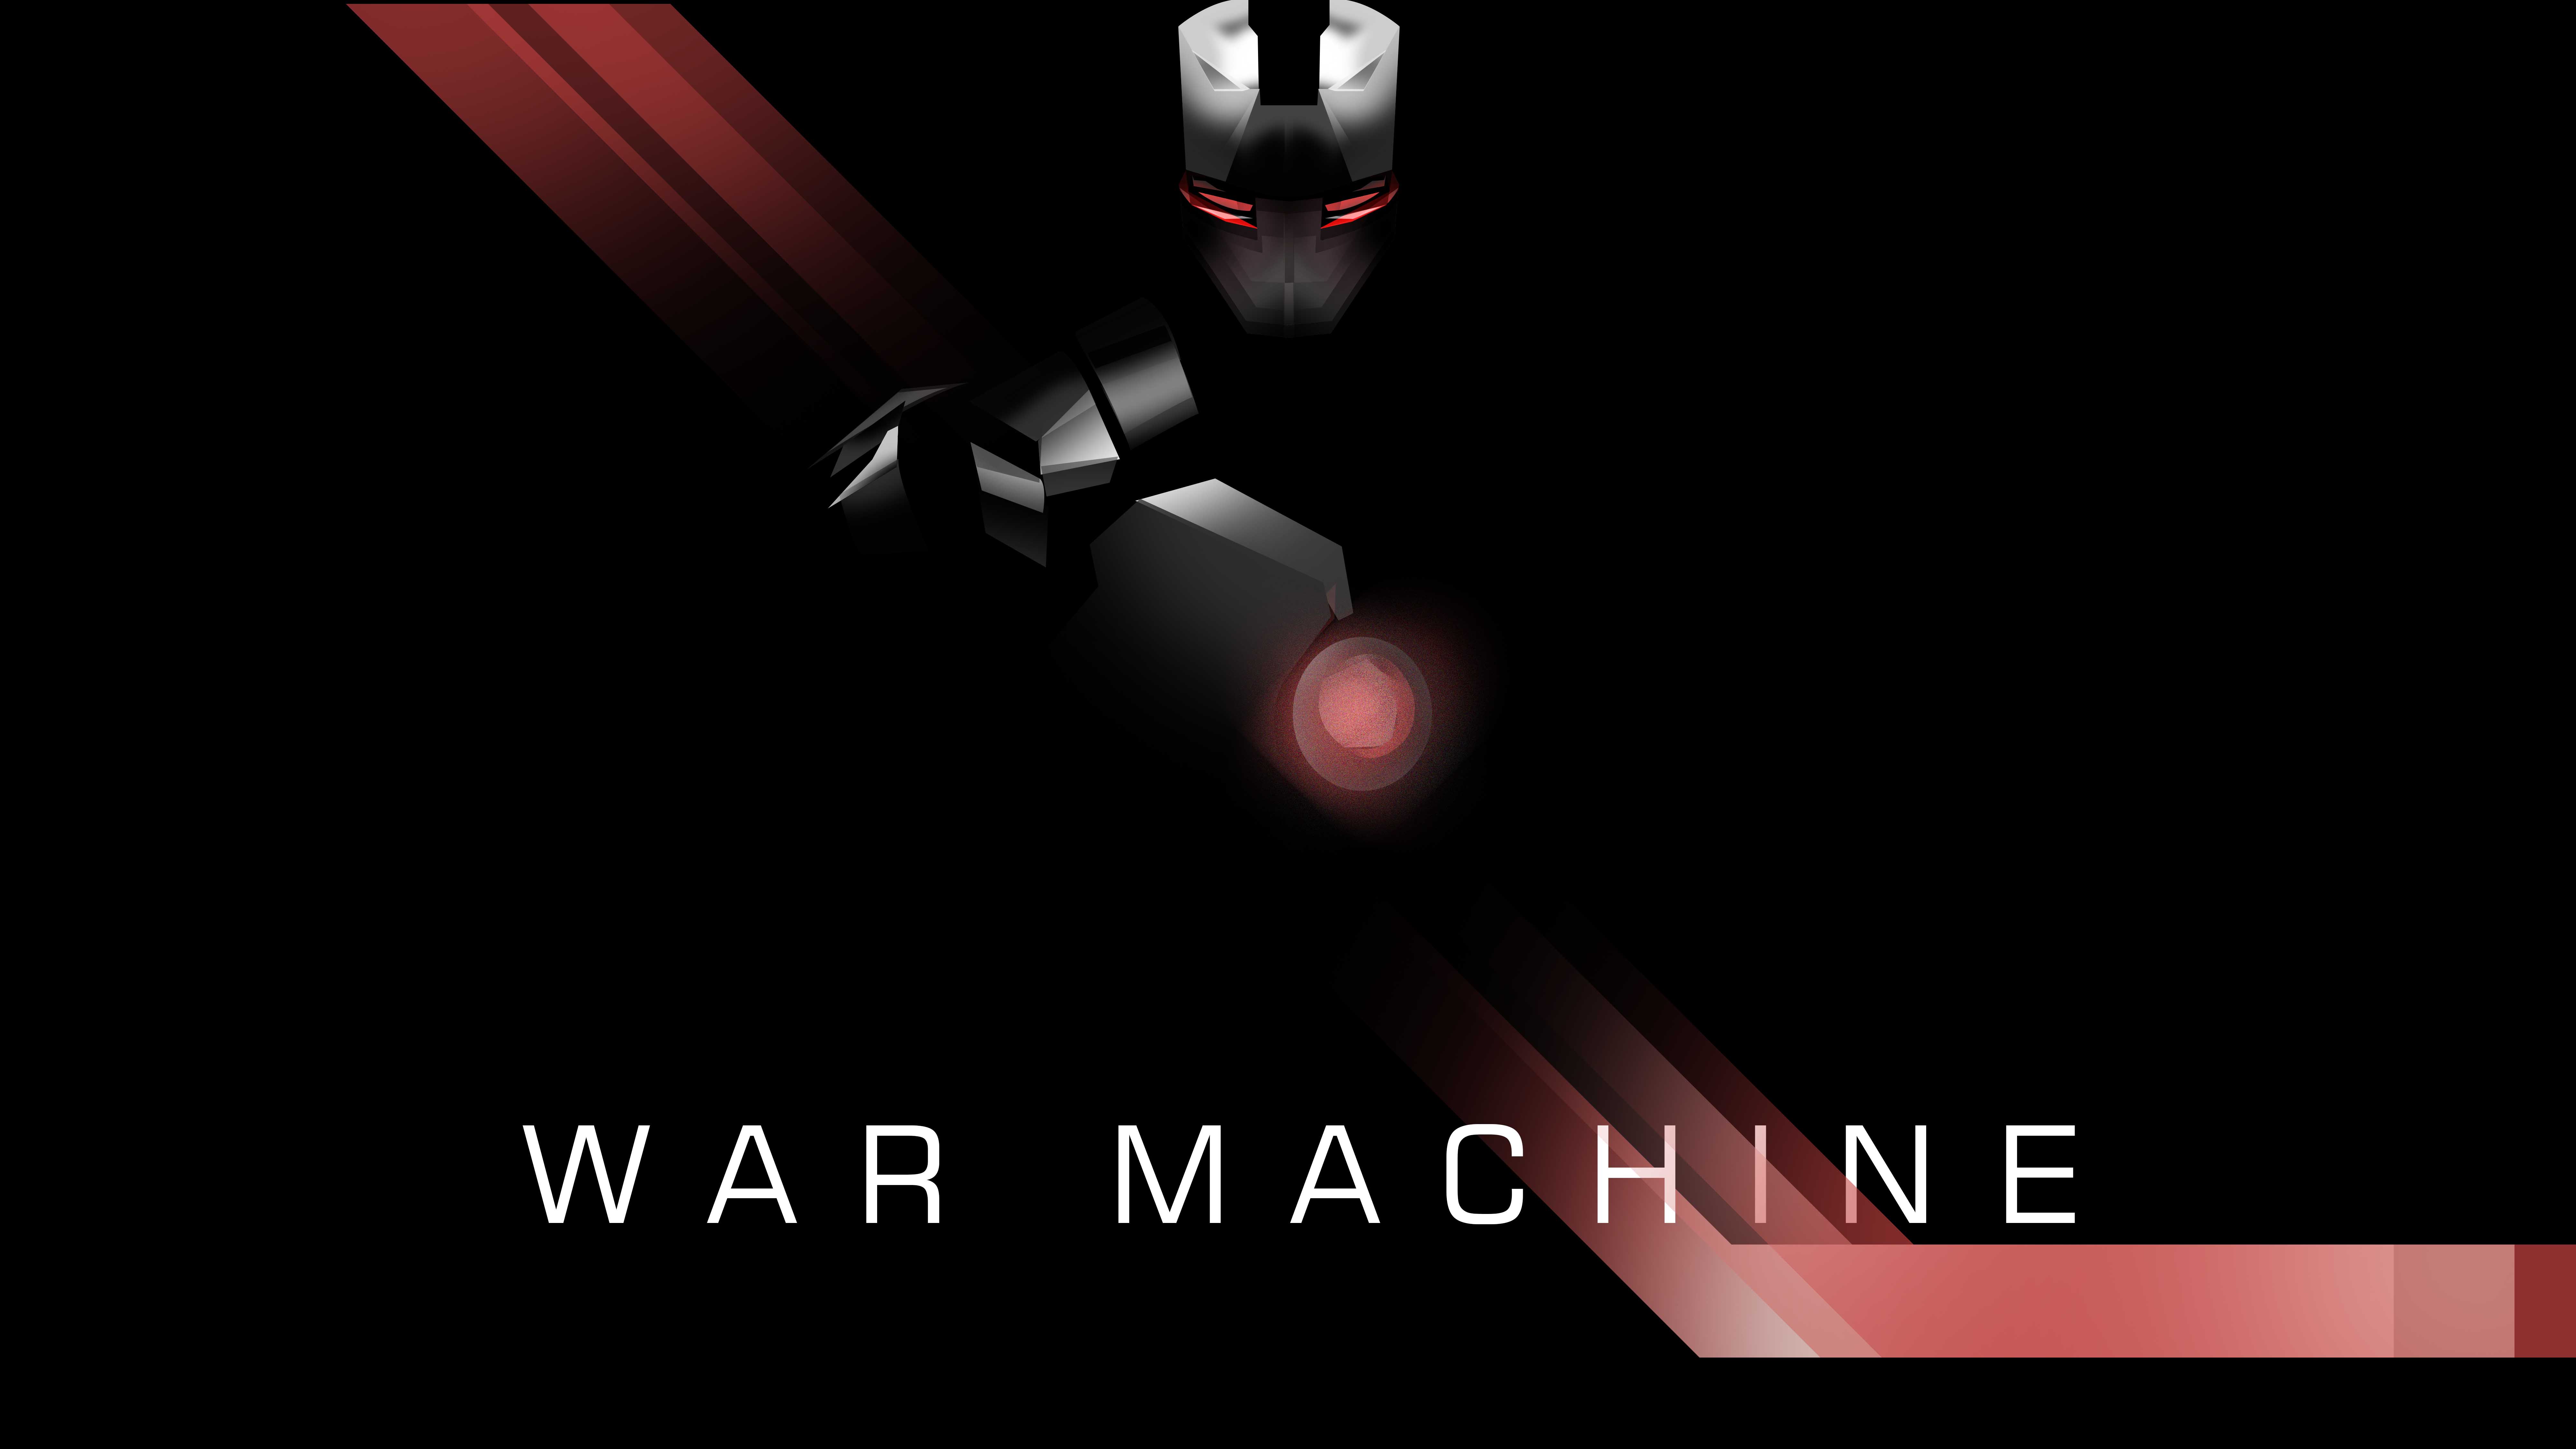 War Machine Minimal 4K 8k Wallpapers